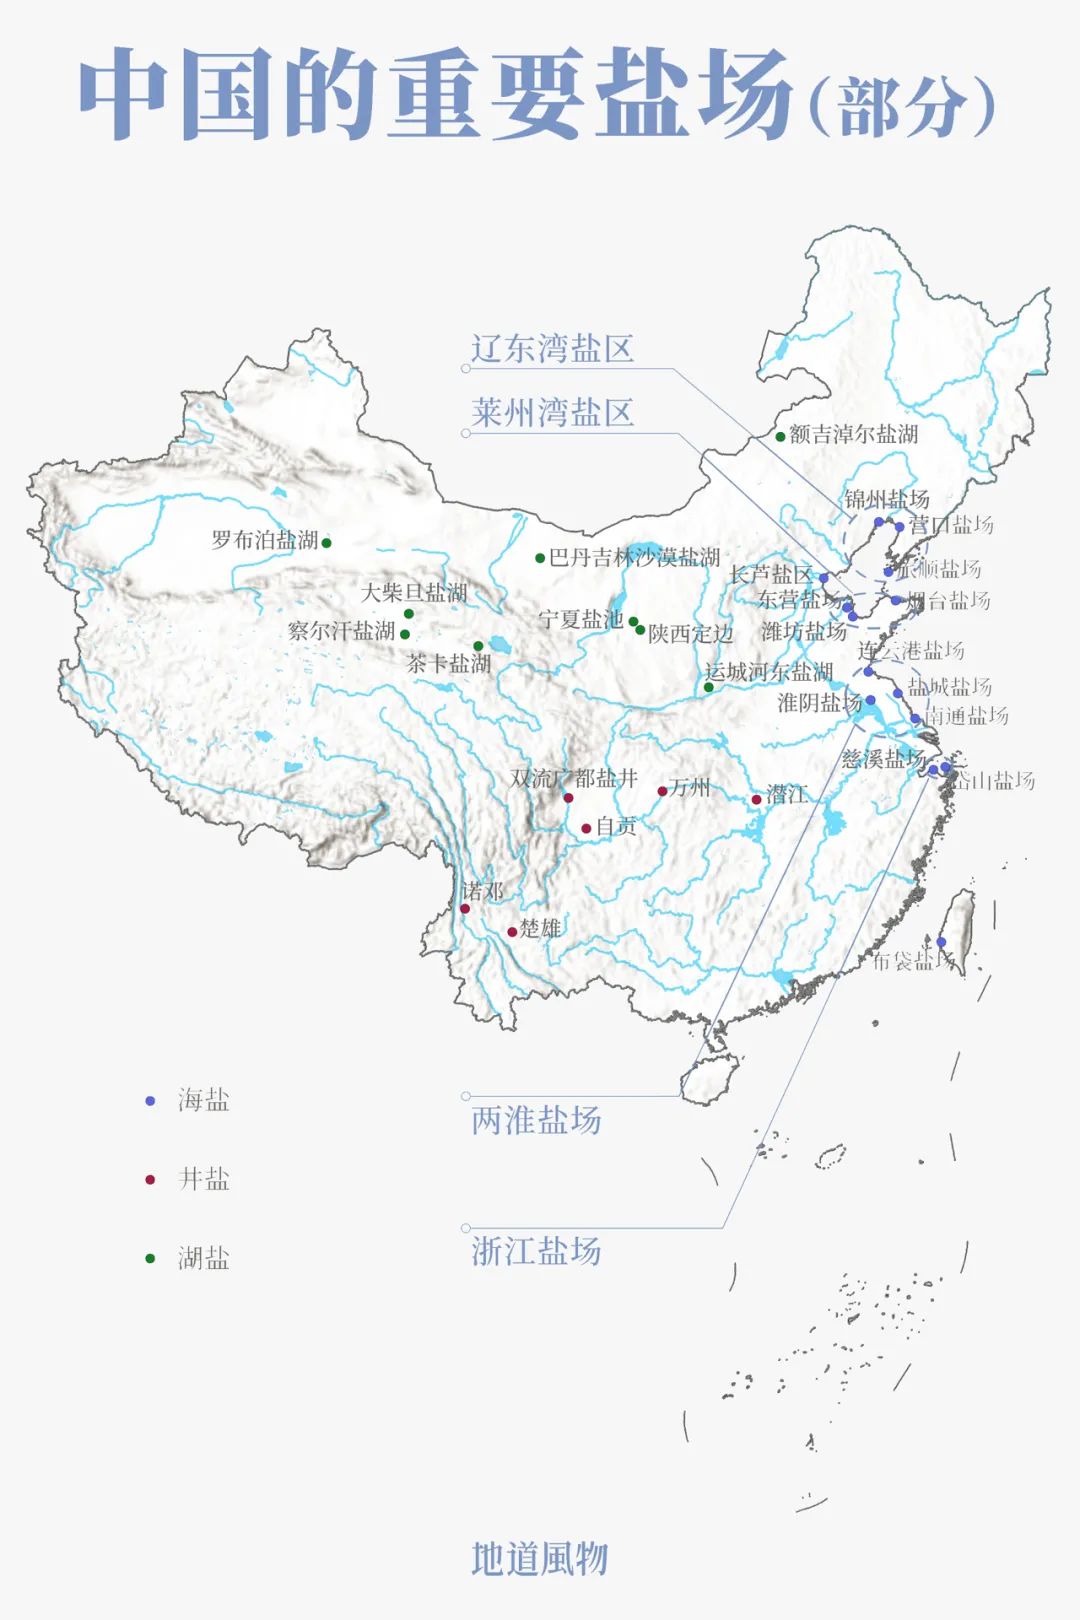 中国三大盐场分布图图片